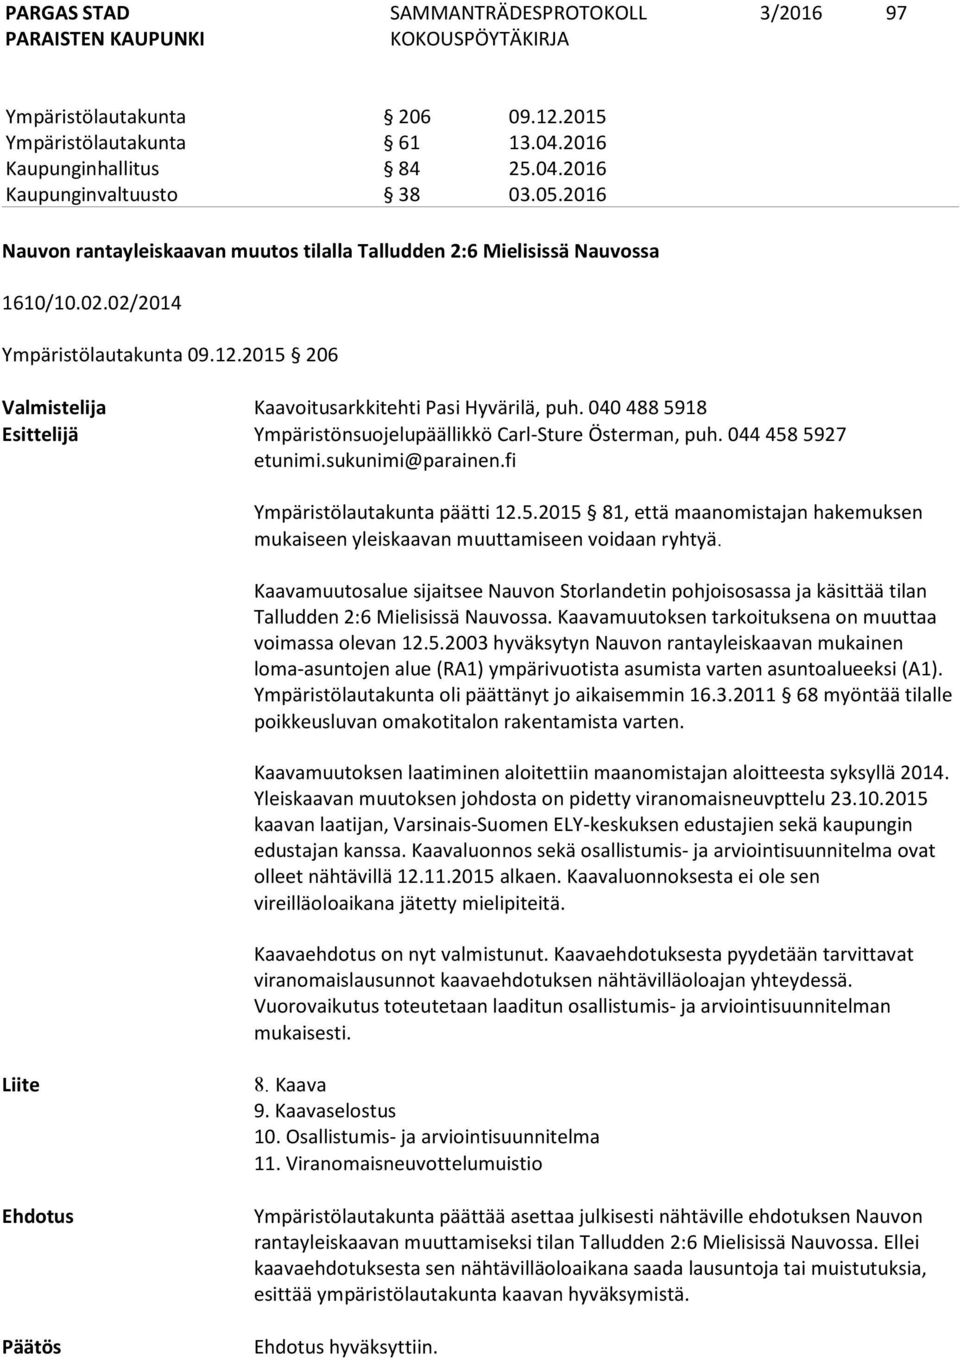 040 488 5918 Esittelijä Ympäristönsuojelupäällikkö Carl-Sture Österman, puh. 044 458 5927 etunimi.sukunimi@parainen.fi Ympäristölautakunta päätti 12.5.2015 81, että maanomistajan hakemuksen mukaiseen yleiskaavan muuttamiseen voidaan ryhtyä.